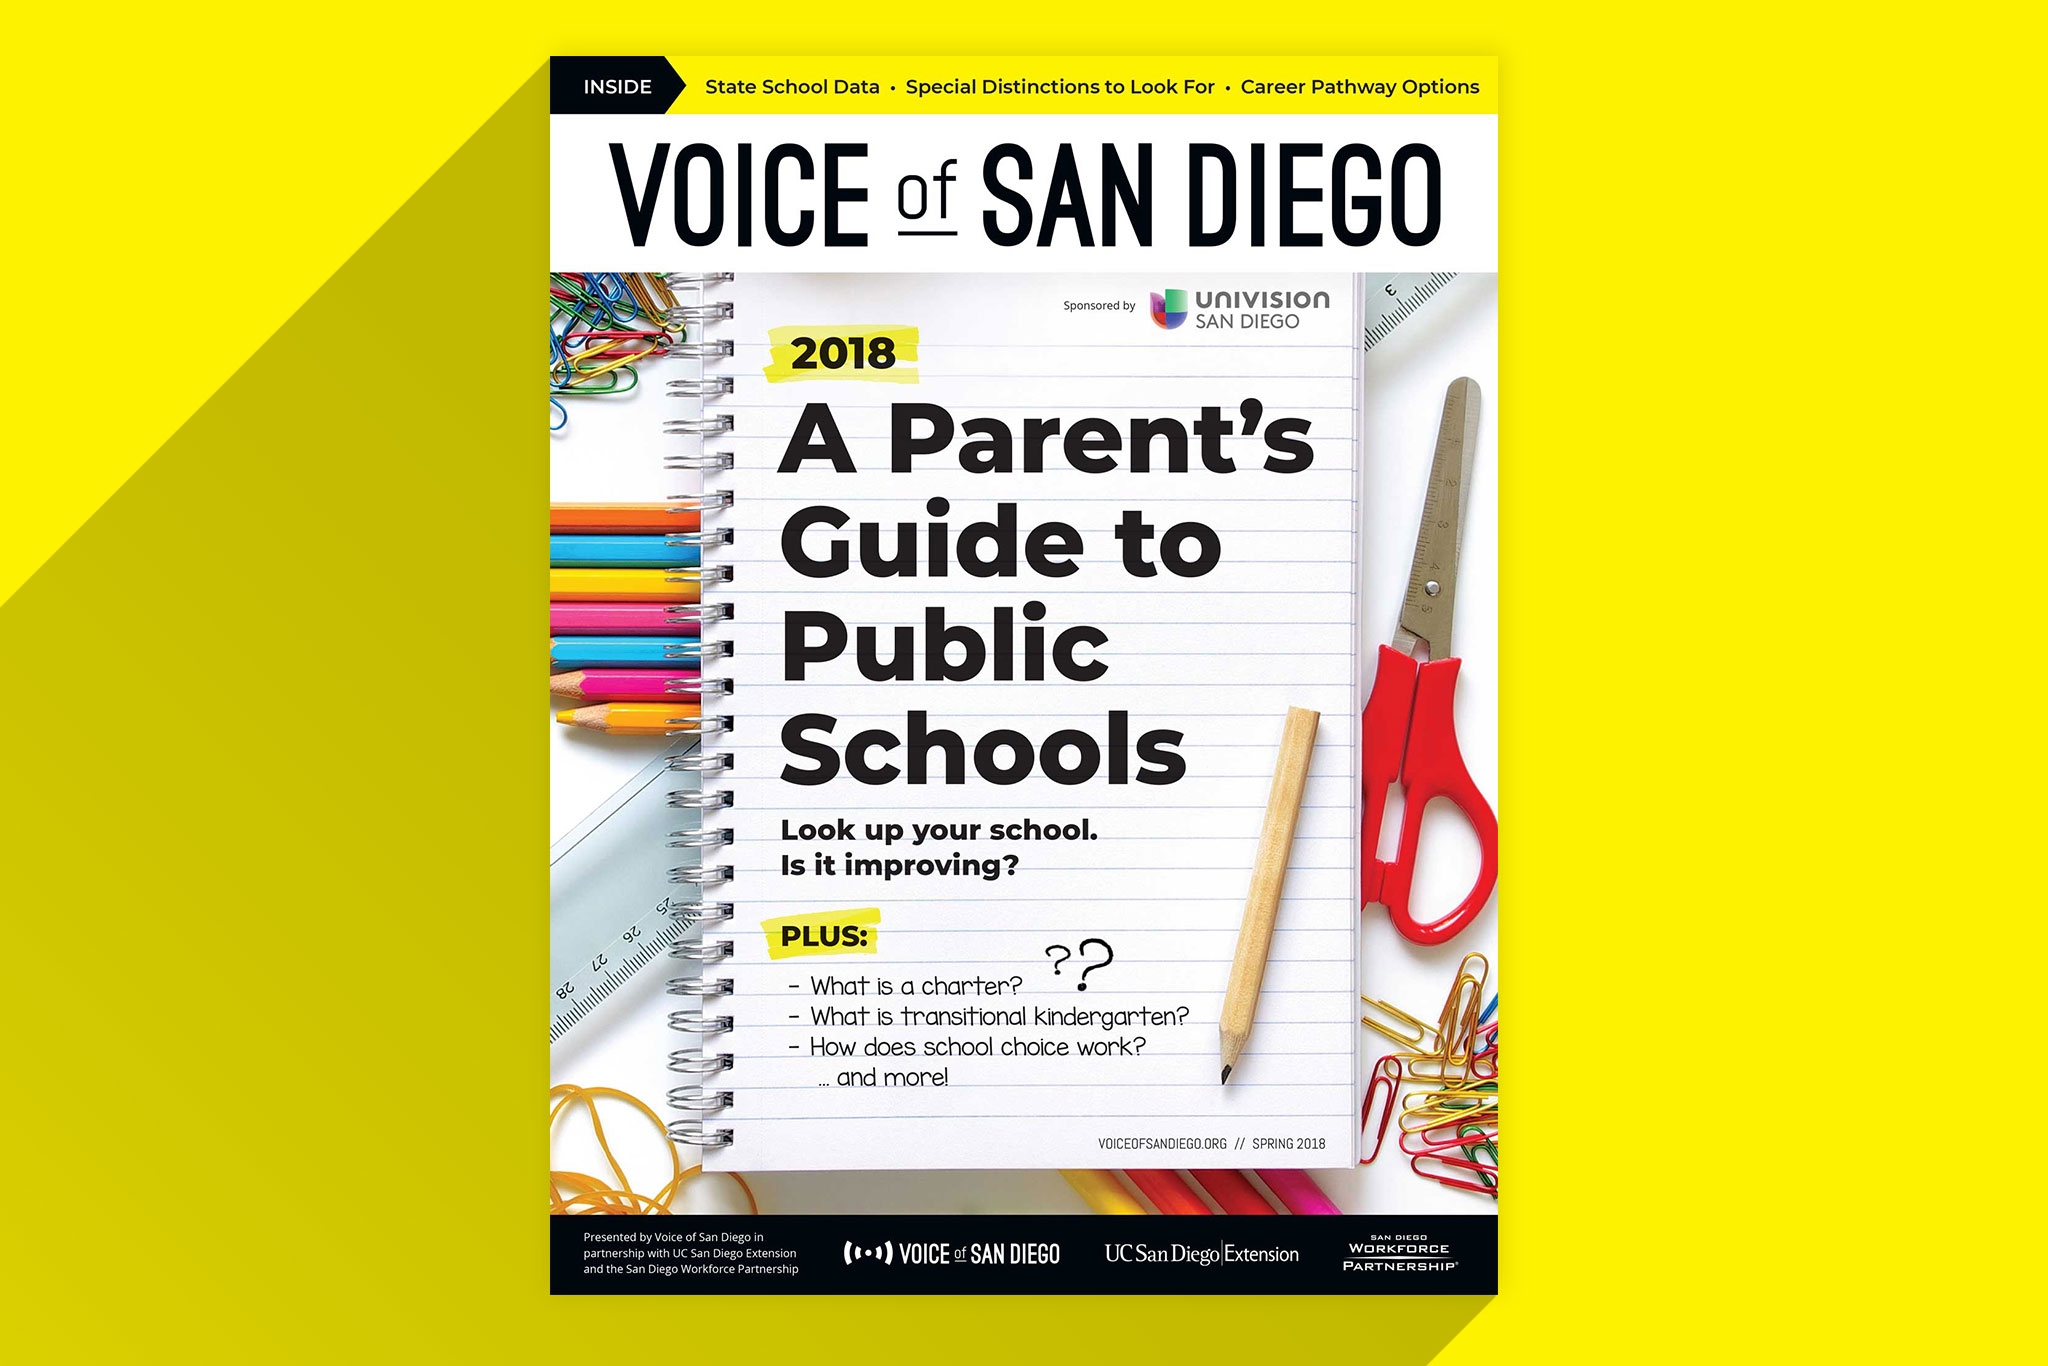 A Parent's Guide to Public Schools